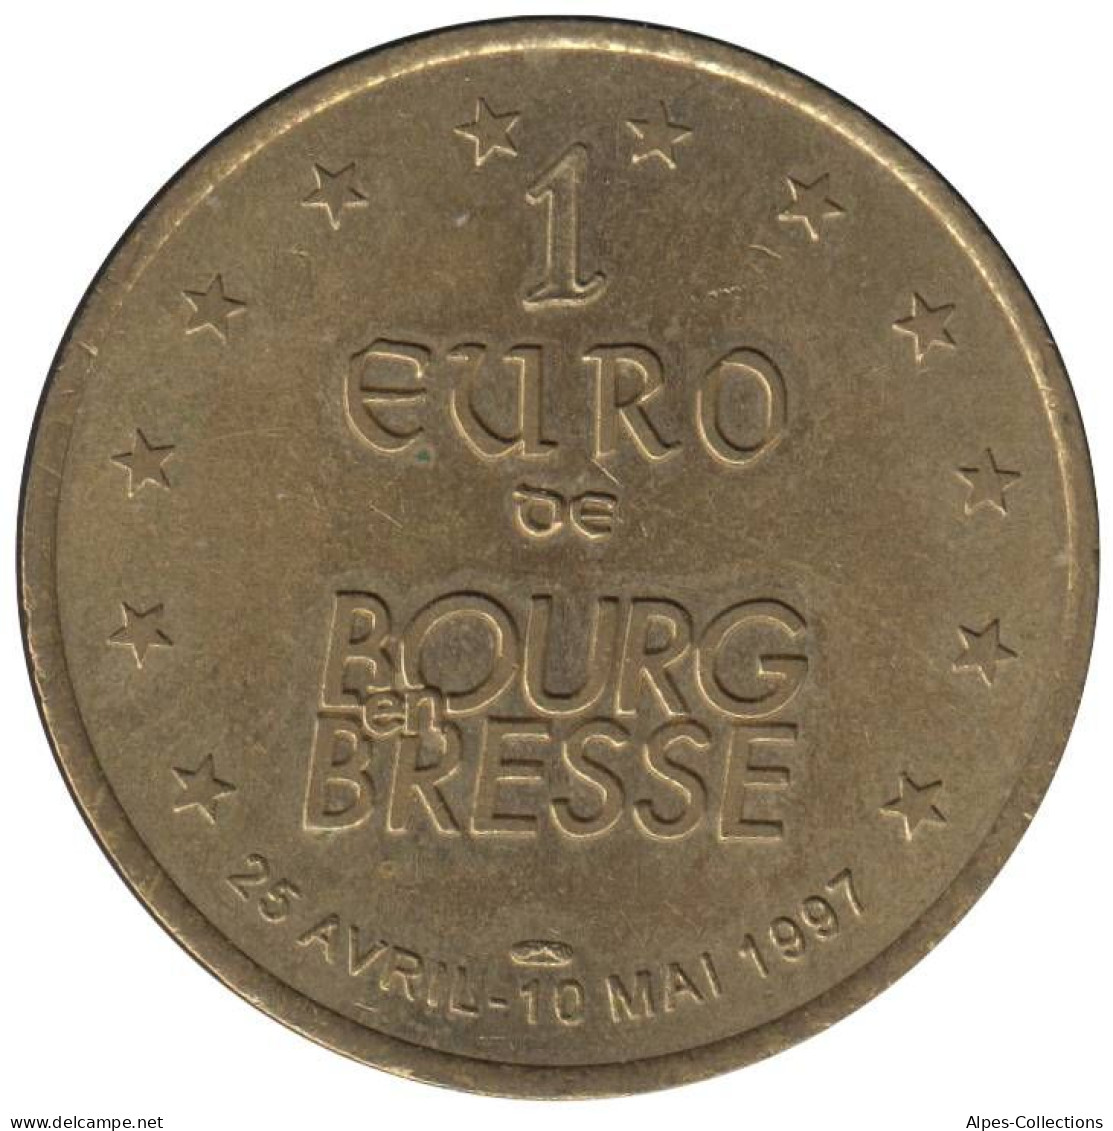 BOURG EN BRESSE - EU0010.6 - 1 EURO DES VILLES - Réf: T266 - 1997 - Euros Des Villes